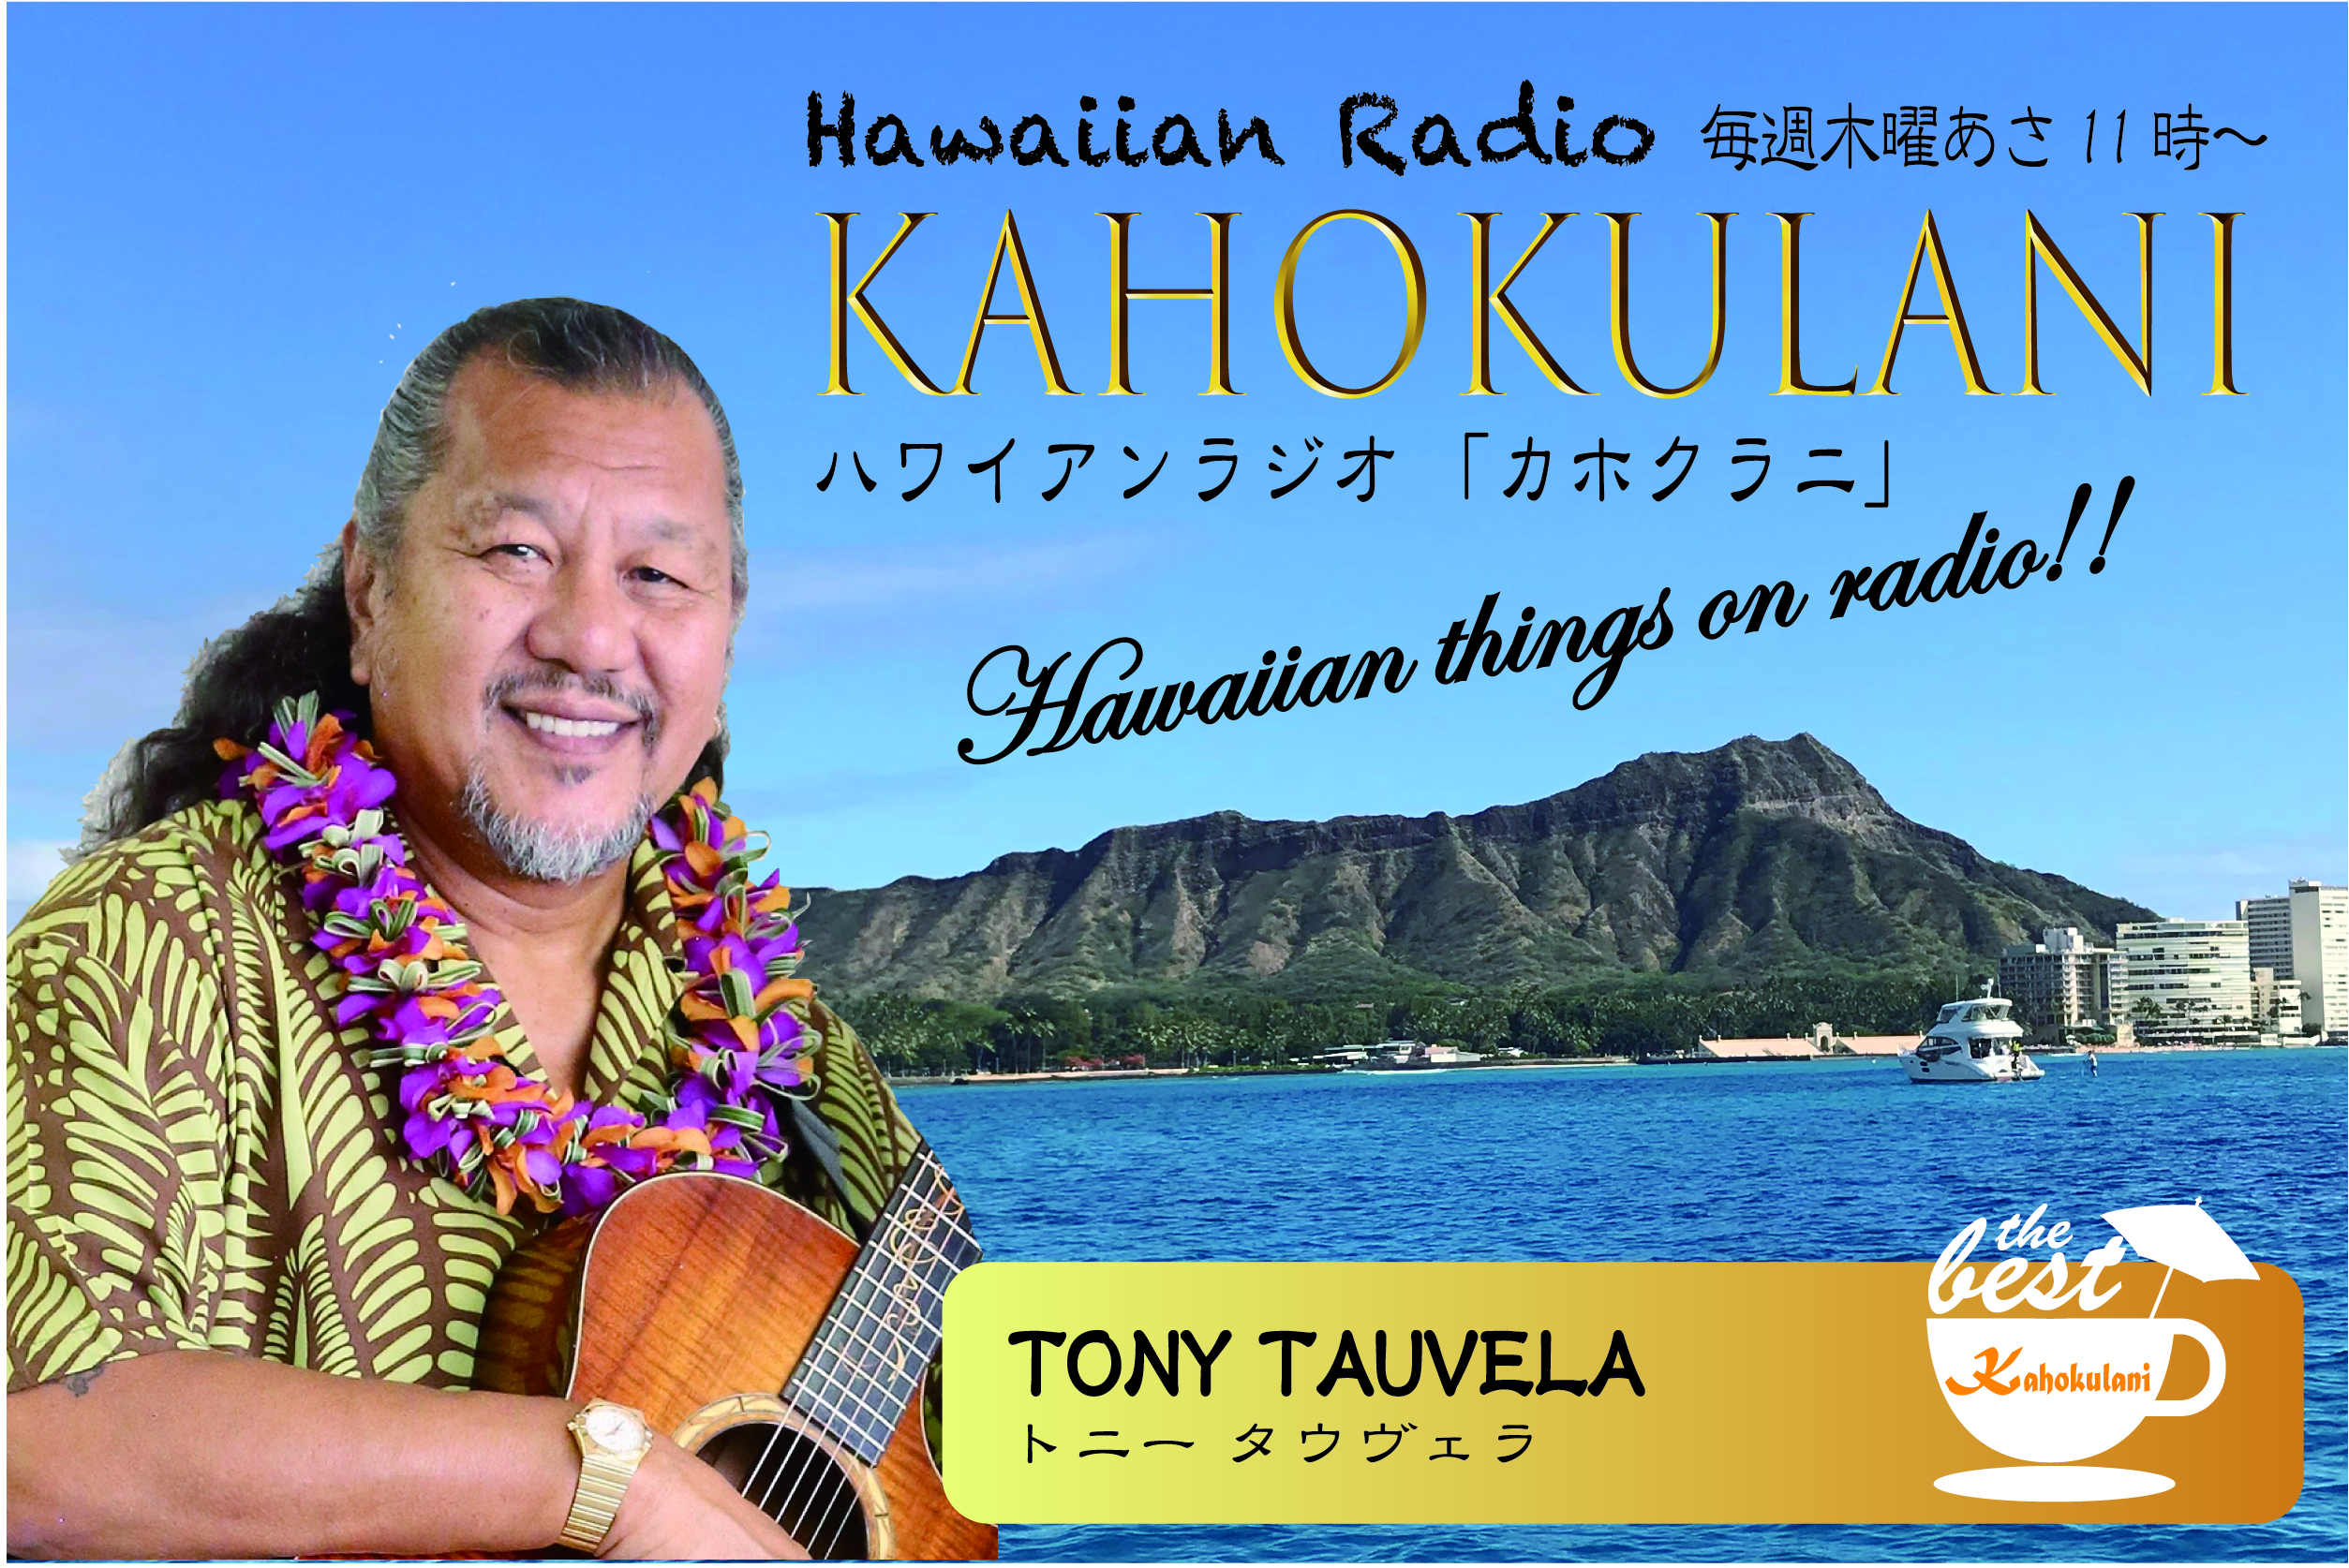 【10月新番組】ハワイアンラジオKahokulani（カホクラニ）